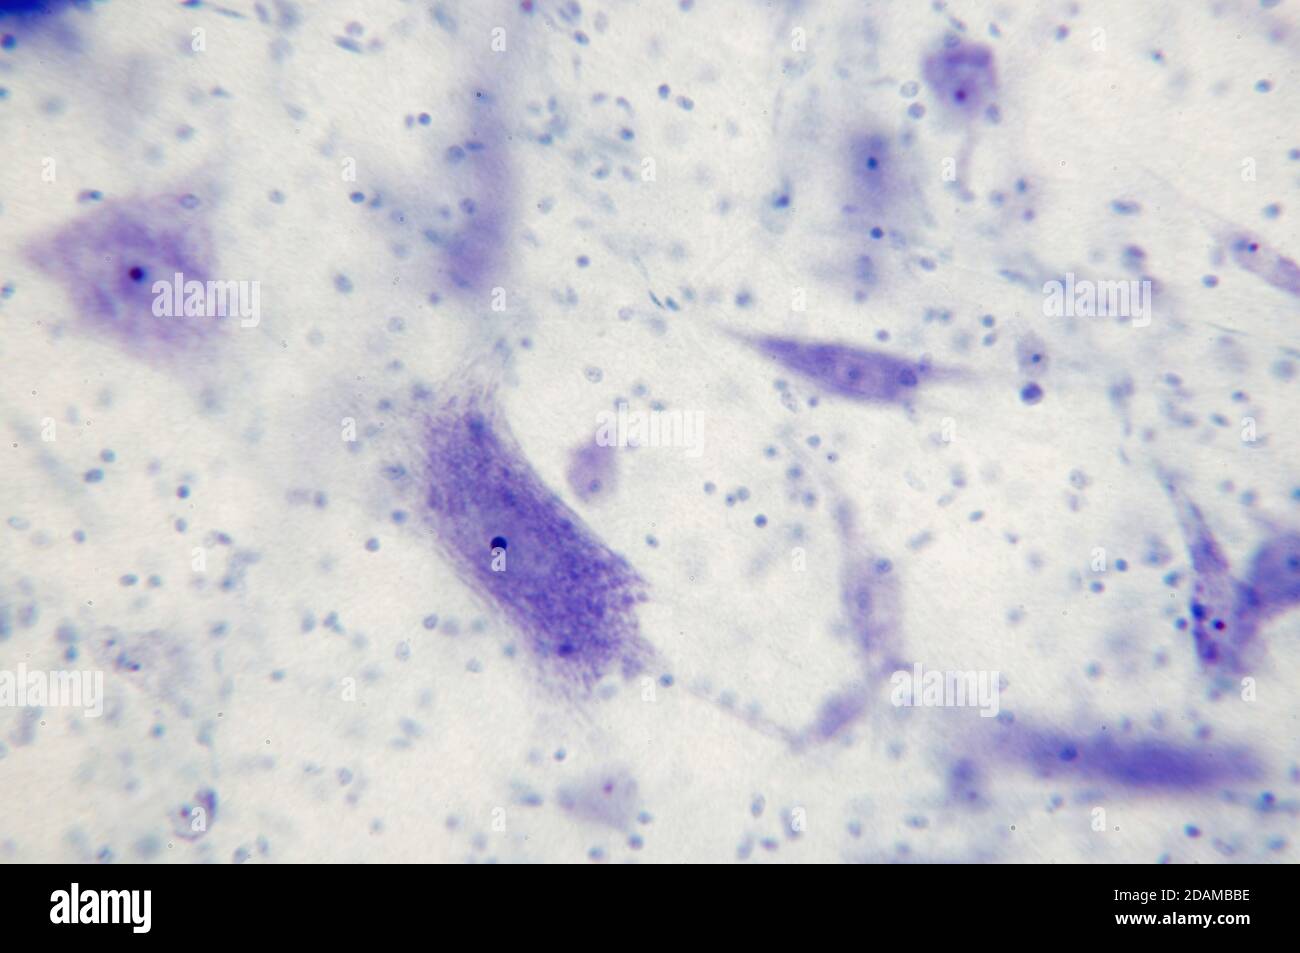 Micrografia chiara delle cellule nervose (grandi, viola) e delle cellule di supporto (neuroglia, punti blu scuro). Ramificazione dal corpo nervo sono dendriti. Foto Stock